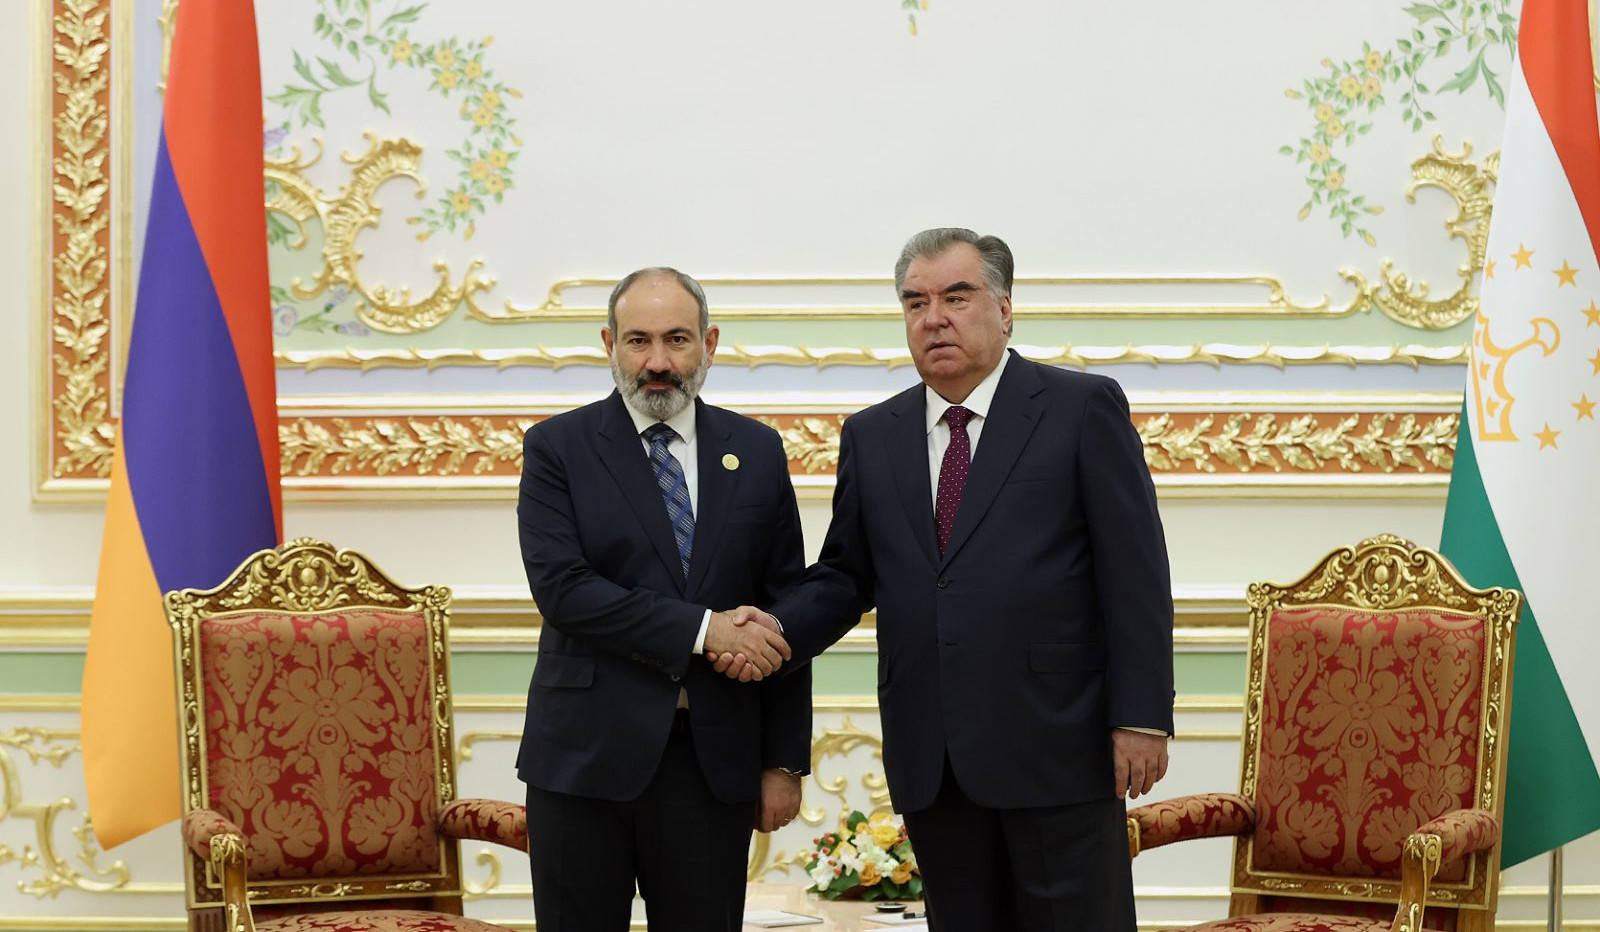 Таджикистан намерен развивать отношения с Арменией по всем направлениям։ Рахмон поздравил Пашиняна